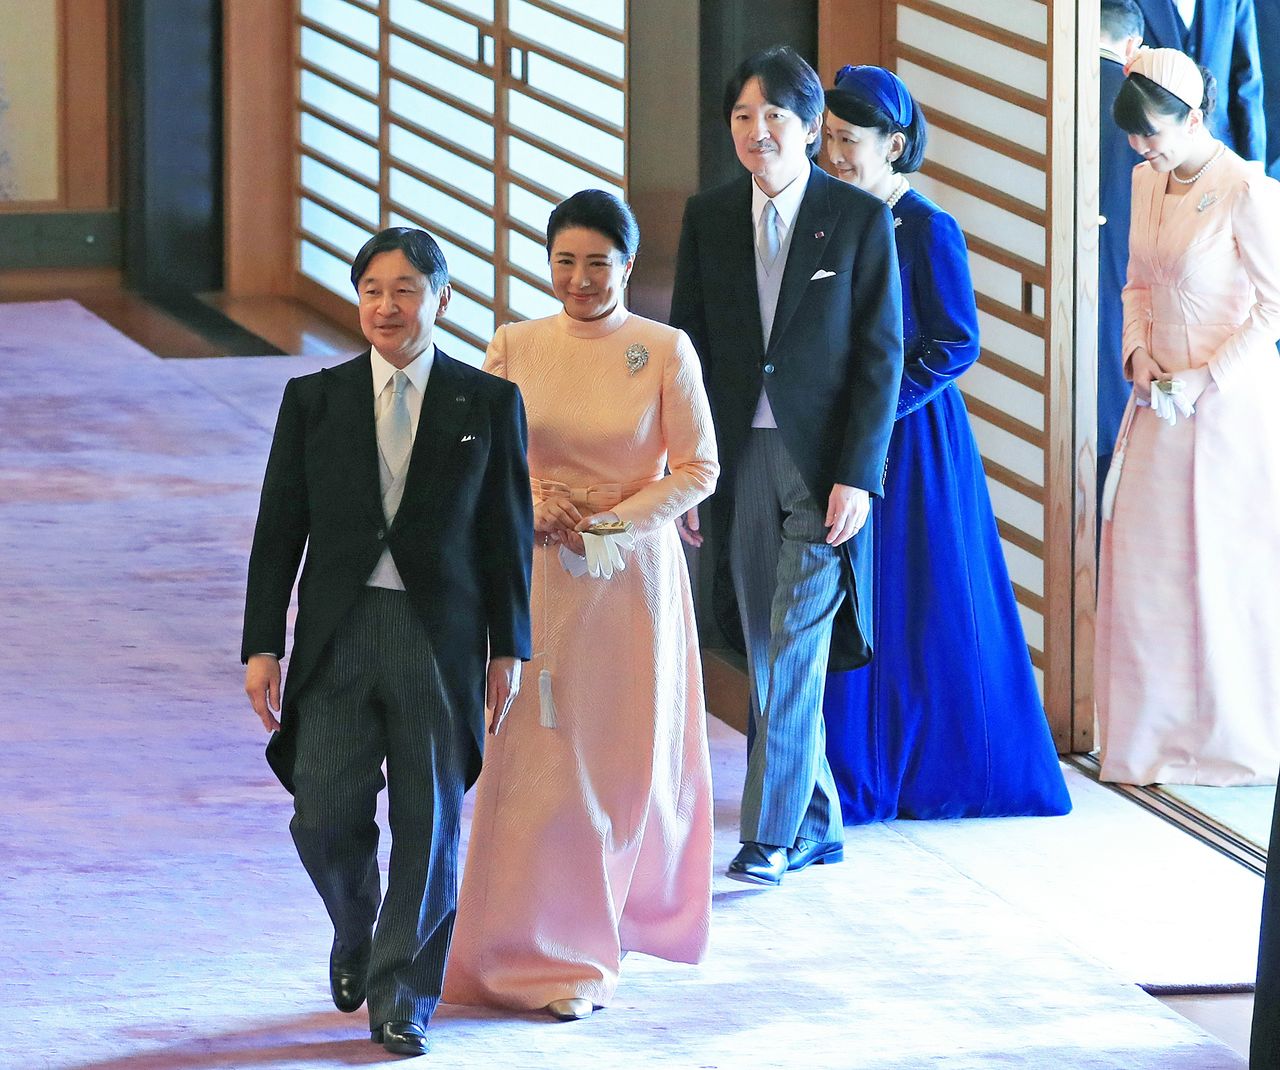 Император Нарухито и императрица Масако, а также принц Акисино с супругой на праздничном чае по случаю шестидесятилетия императора, 23 февраля 2020 г., Императорский дворец, зал «Сюндзю-но ма». Официальная съёмка (© Jiji Press)